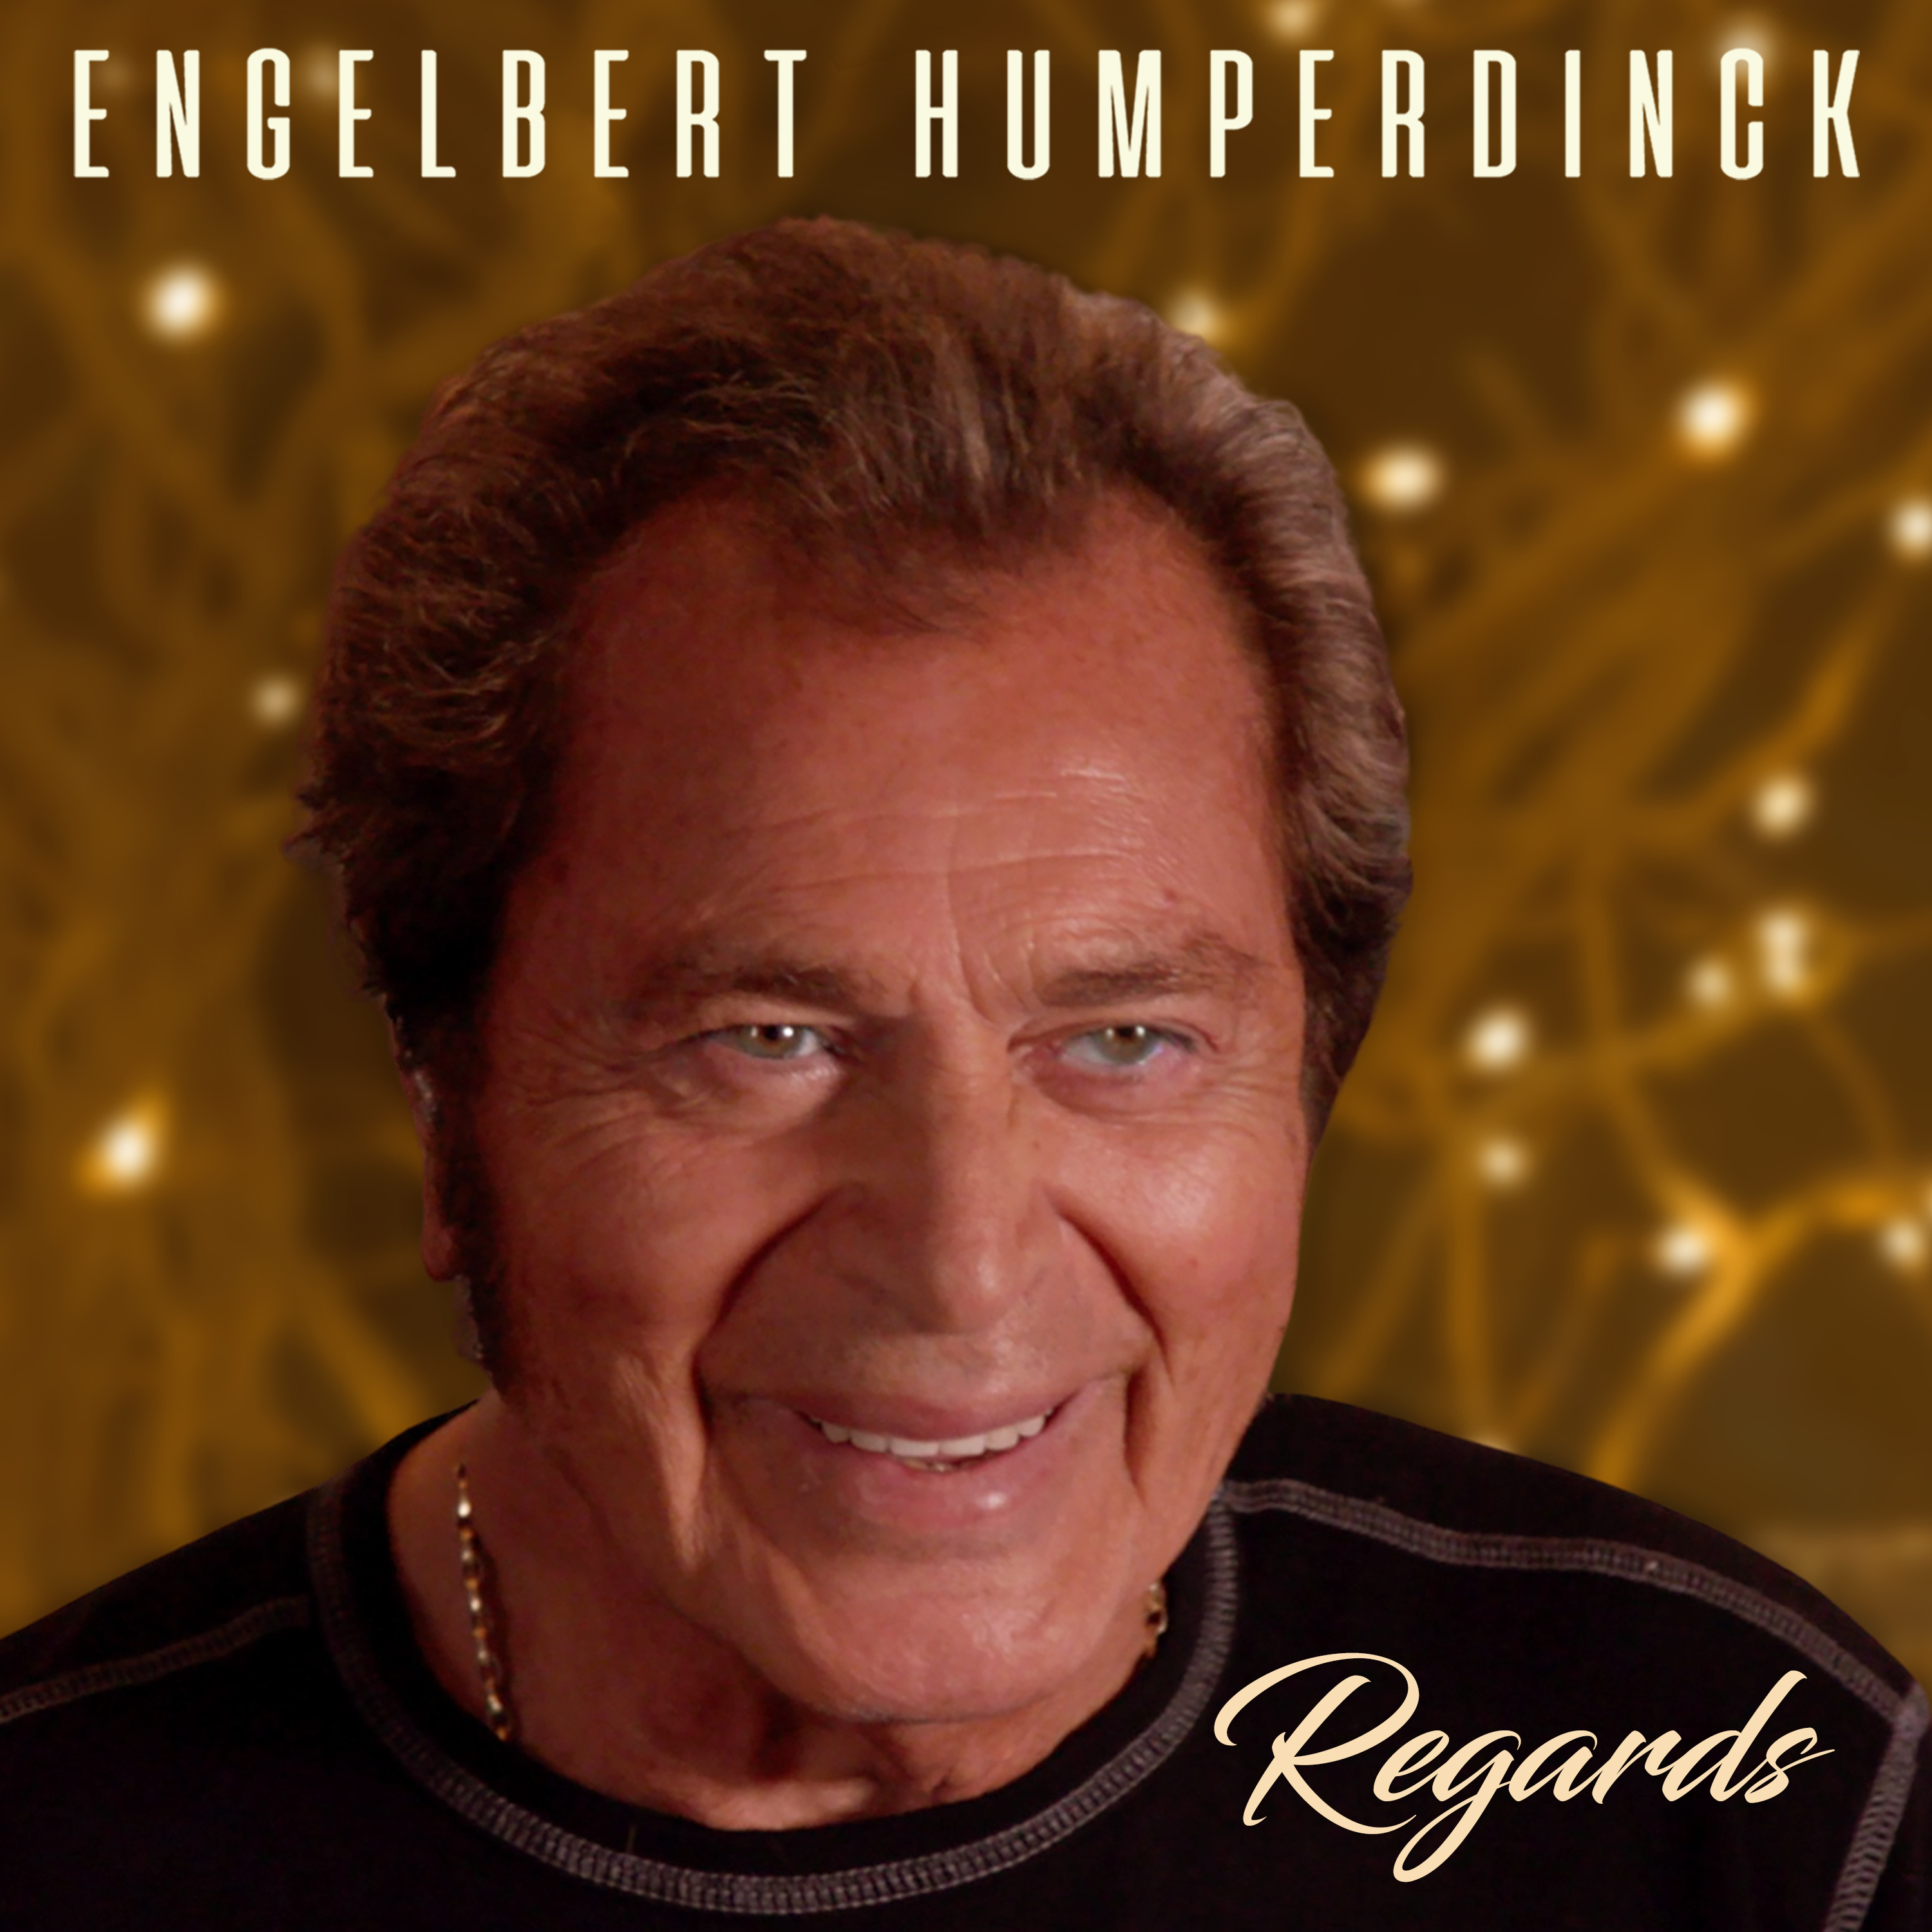 ENGELBERT HUMPERDINCK – Regards CD